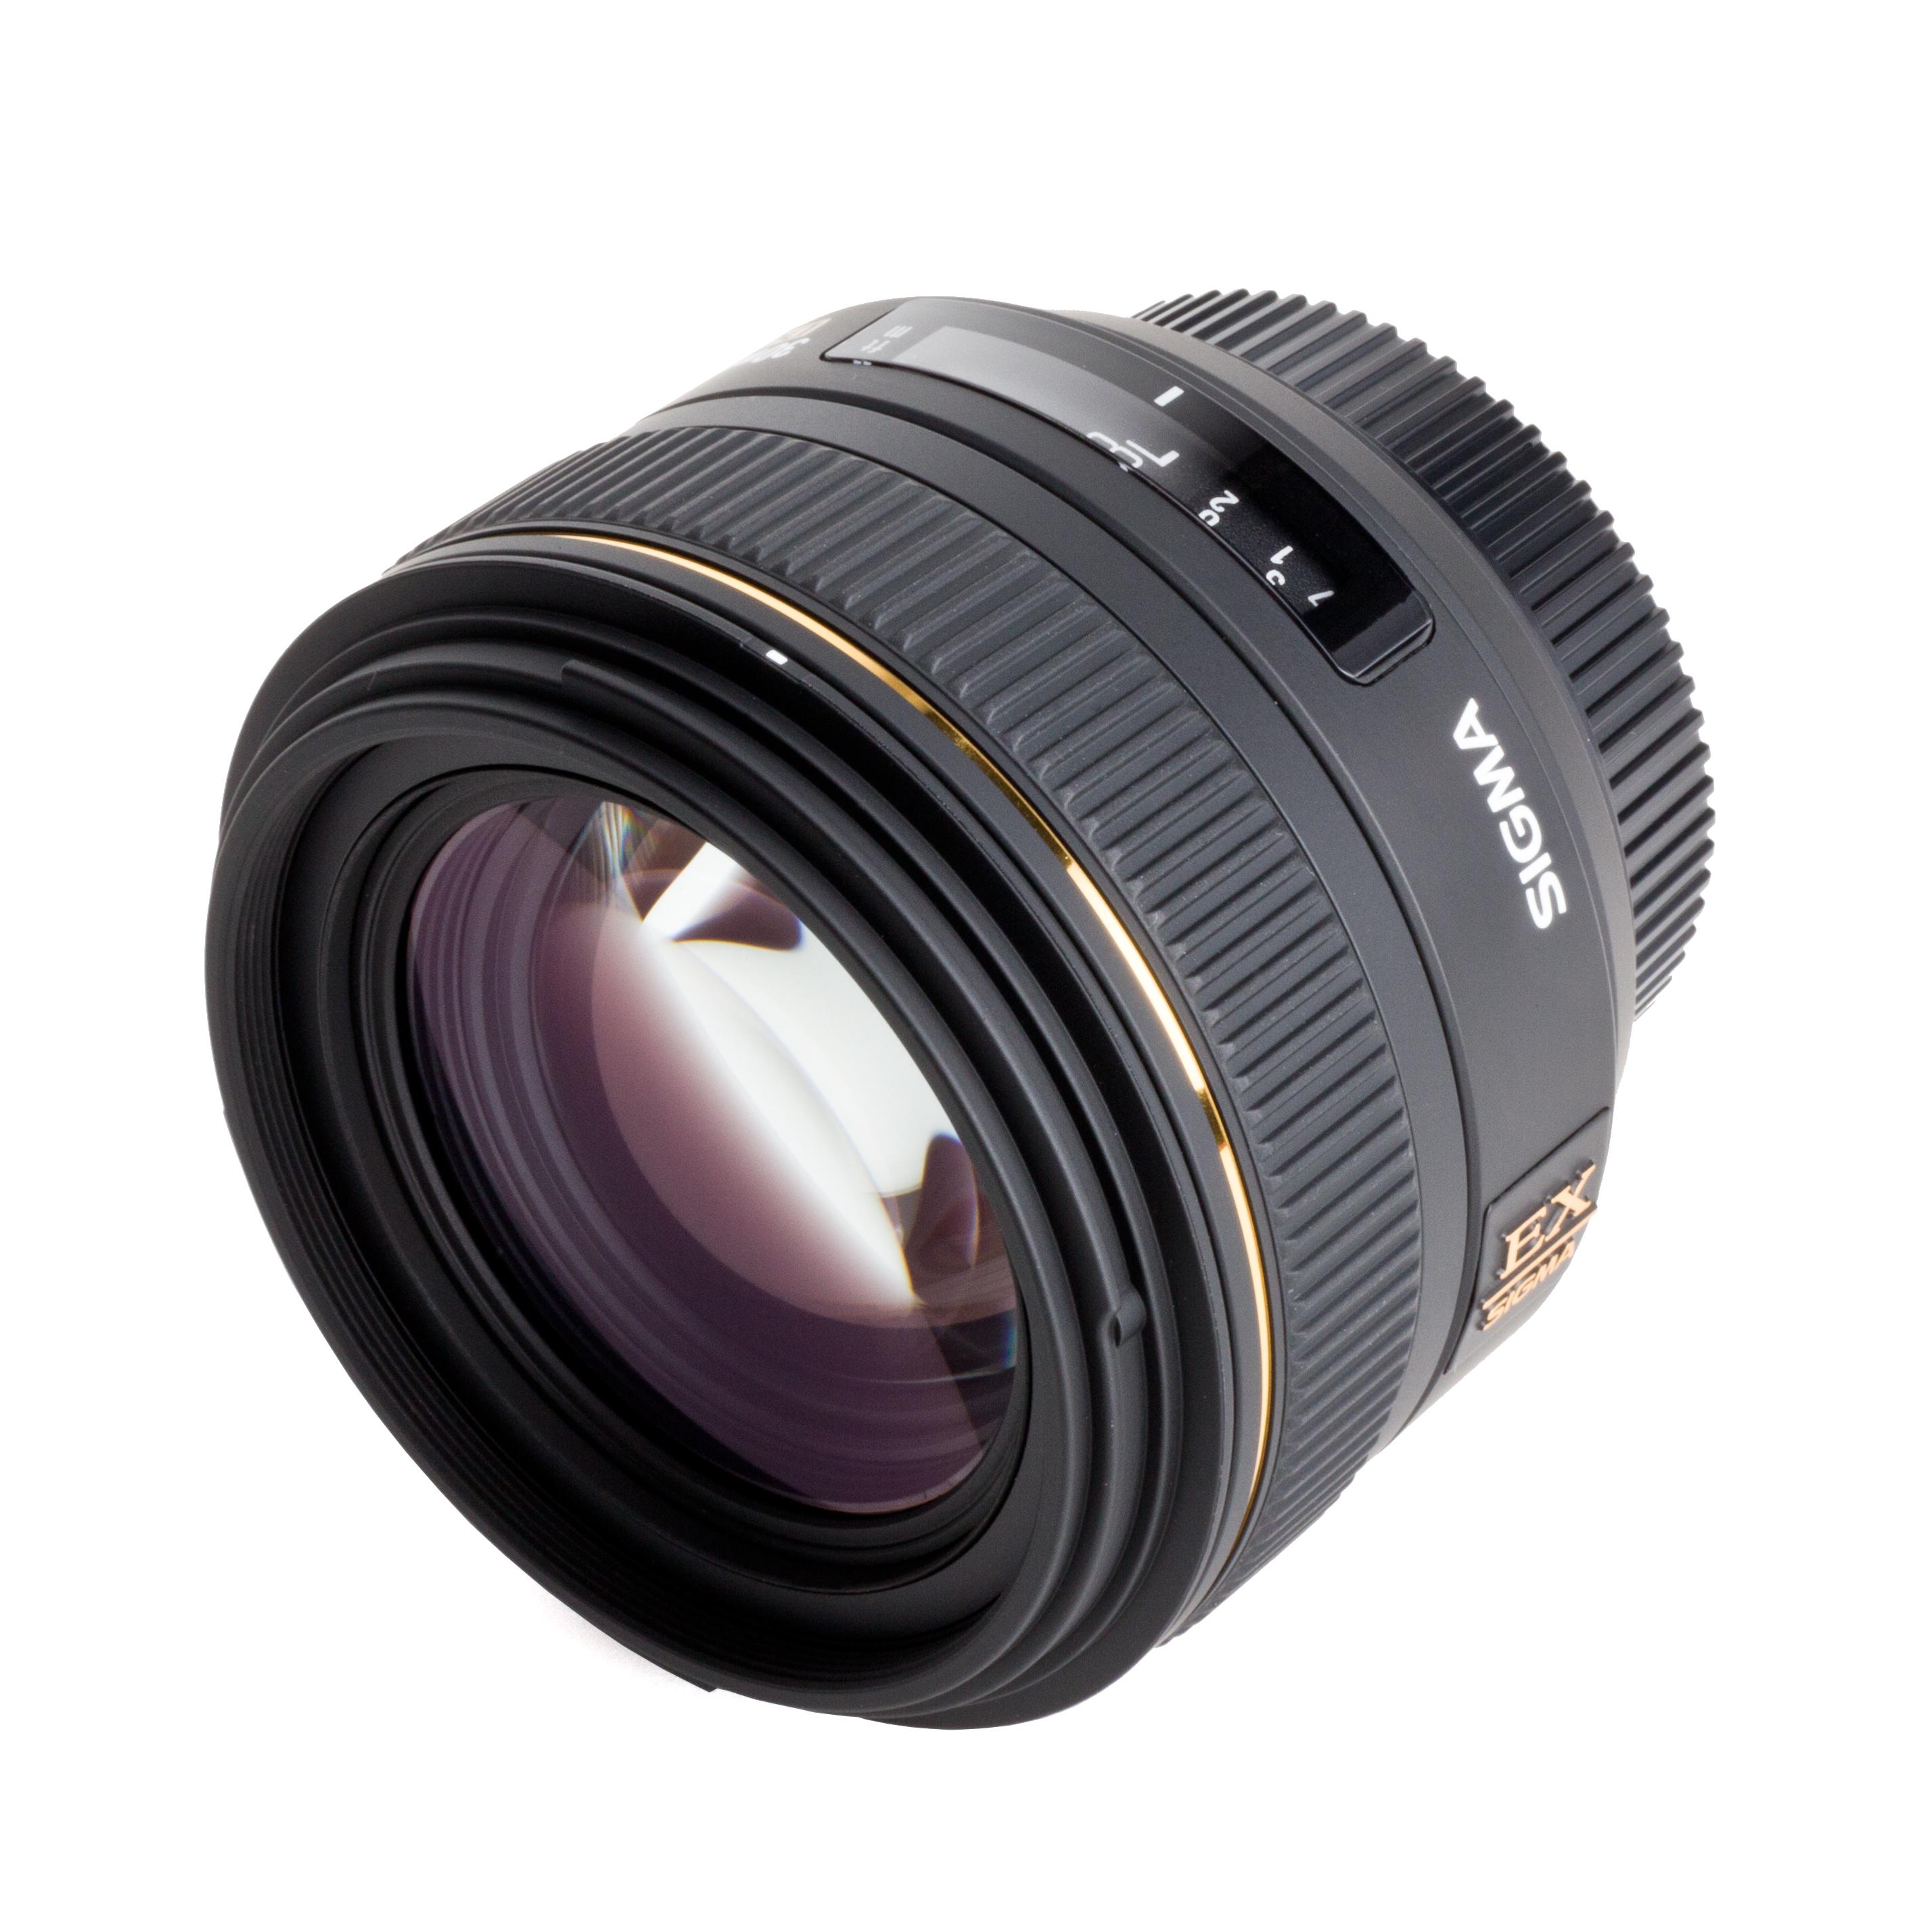 Sigma 30mm f1.4 EX DC HSM per Nikon lunghezza focale fissa 30 mm